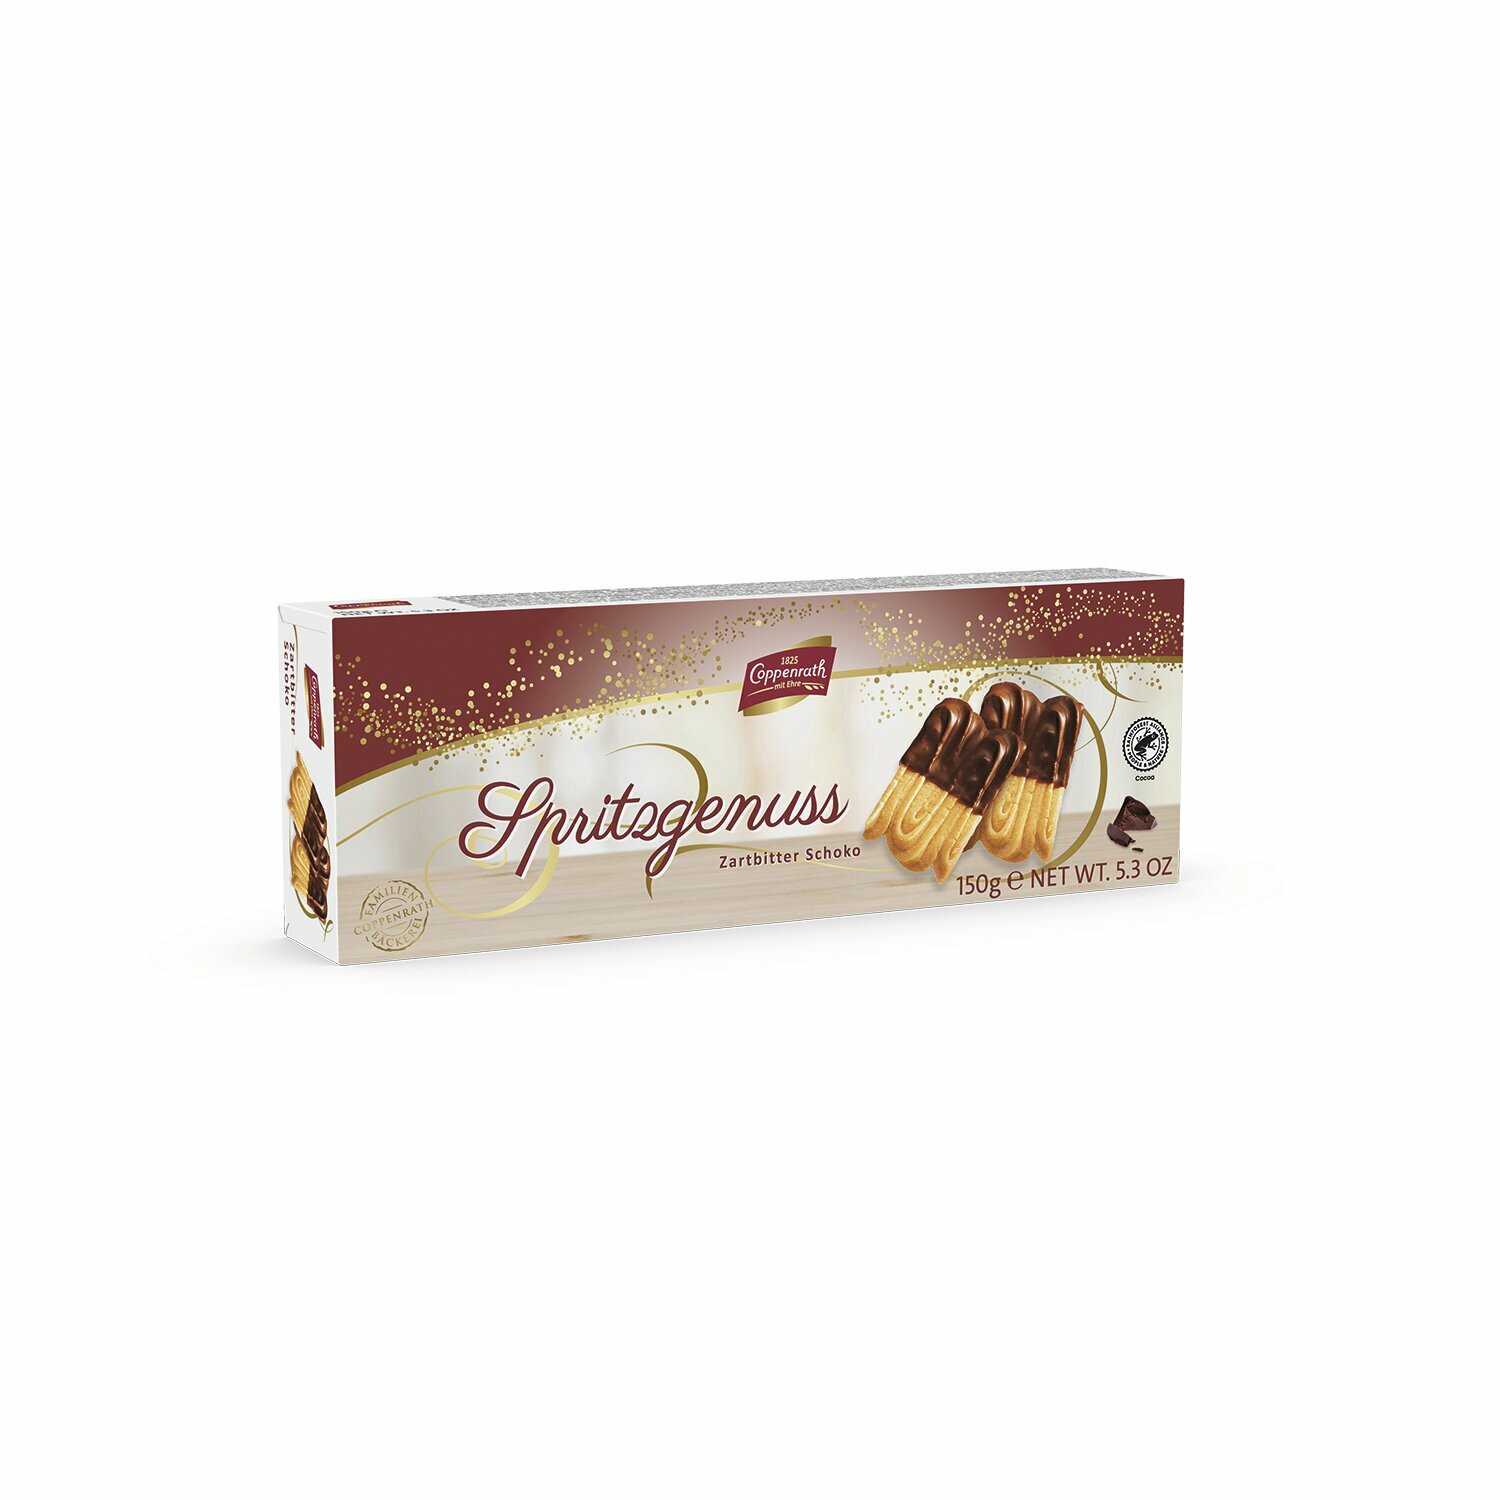 Печенье песочное с темным шоколадом "Coppenrath" Spritz-Genuss 150 грамм